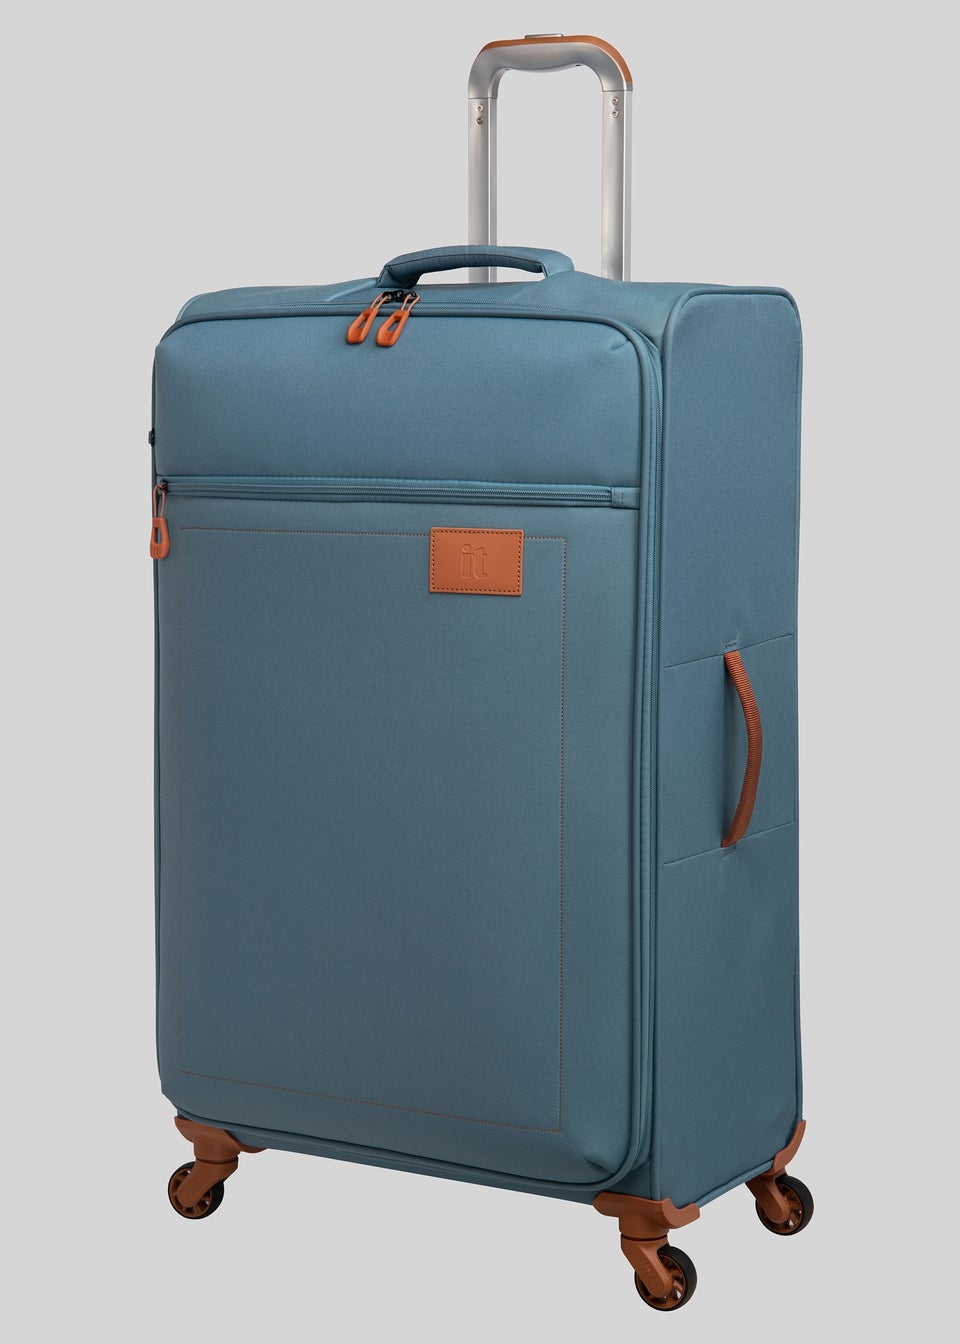 IT Luggage Soft Blue Suitcase